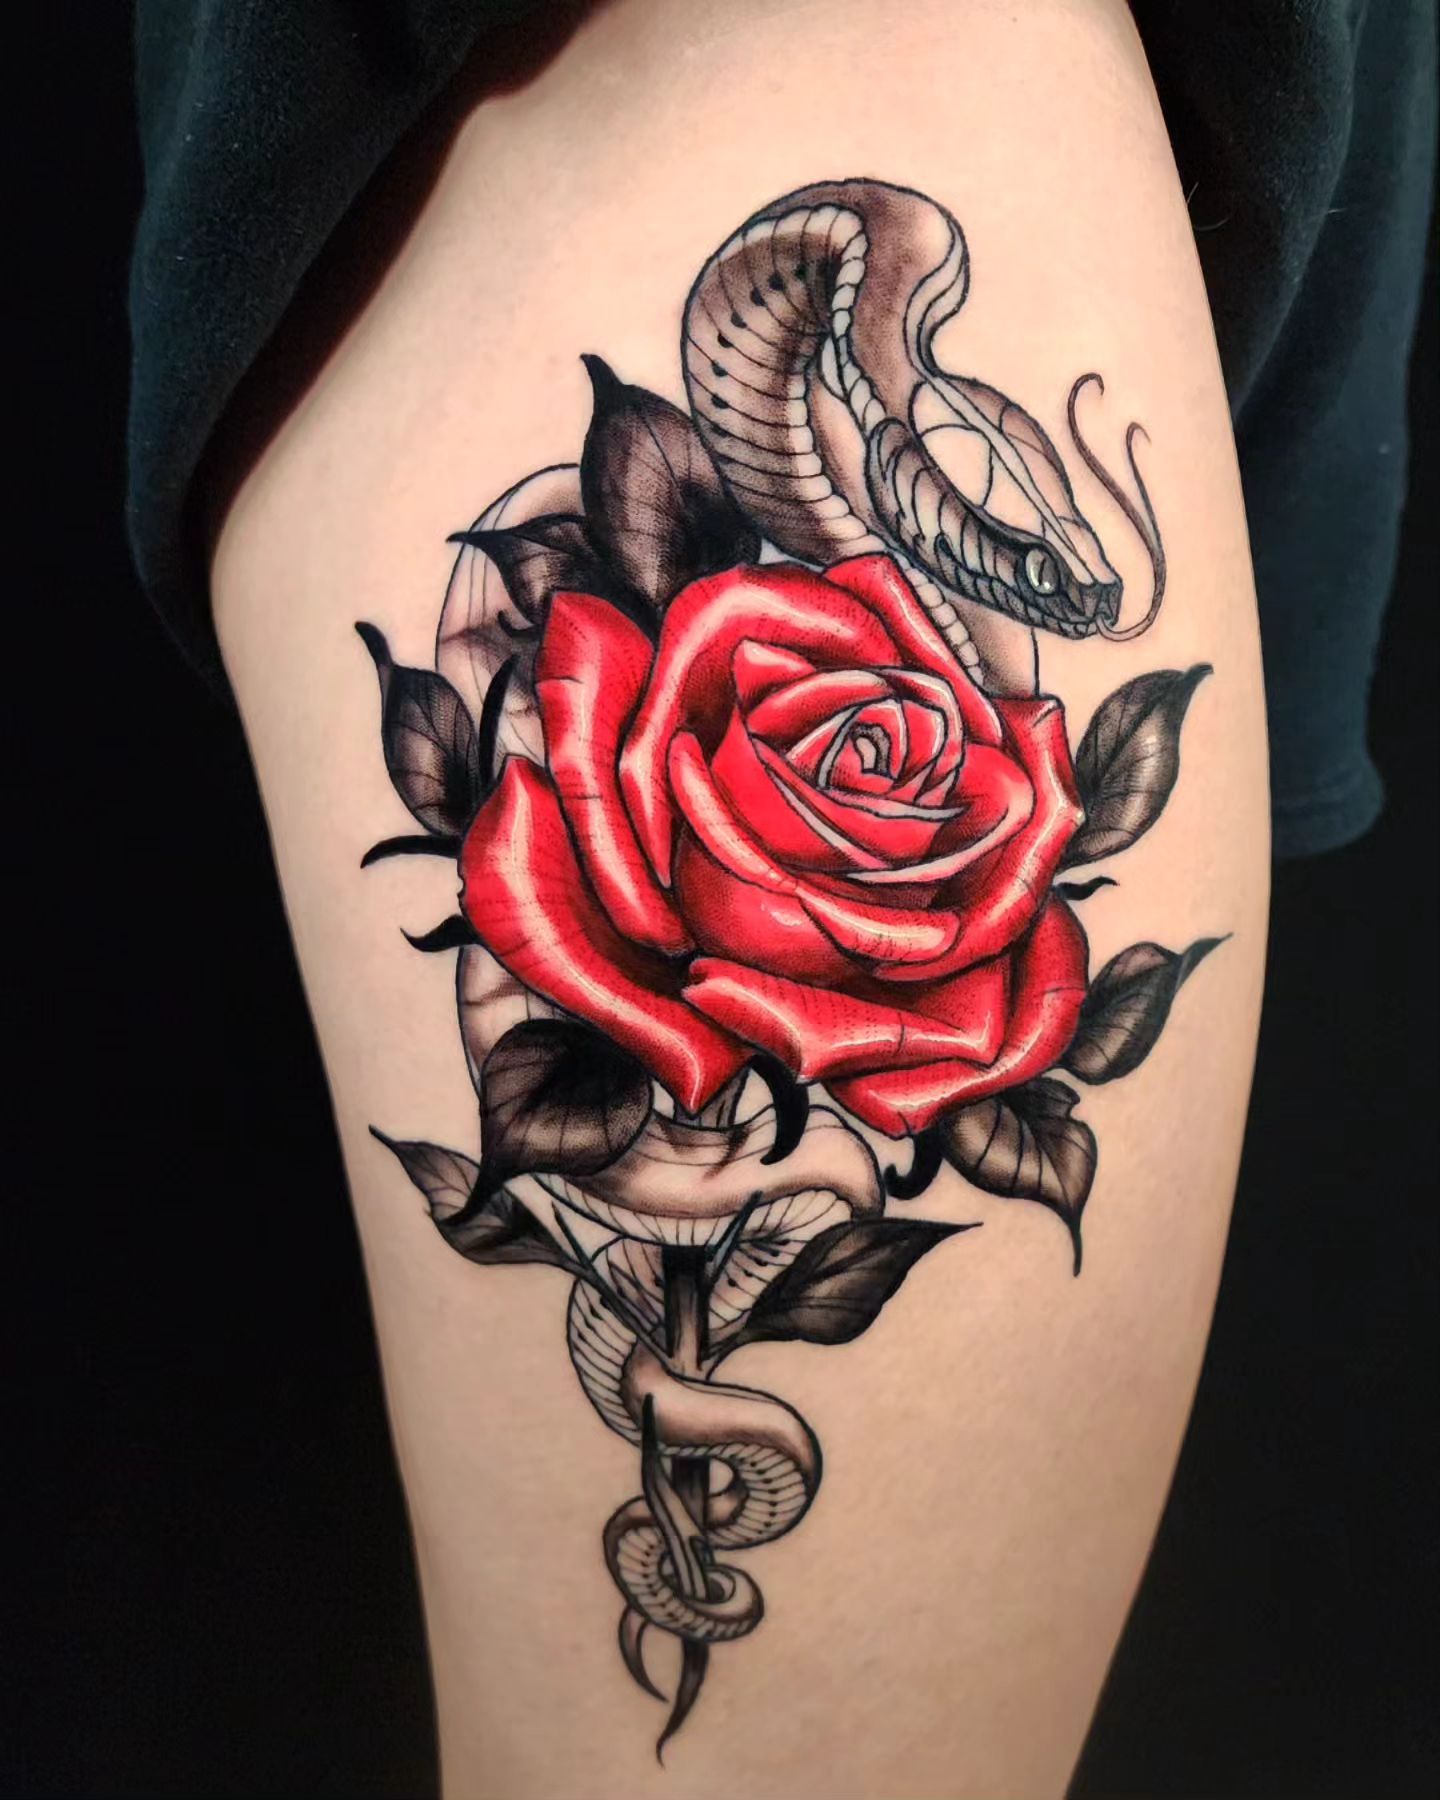 Nahaufnahme des roten Rosen- und Schlangen-Tattoos